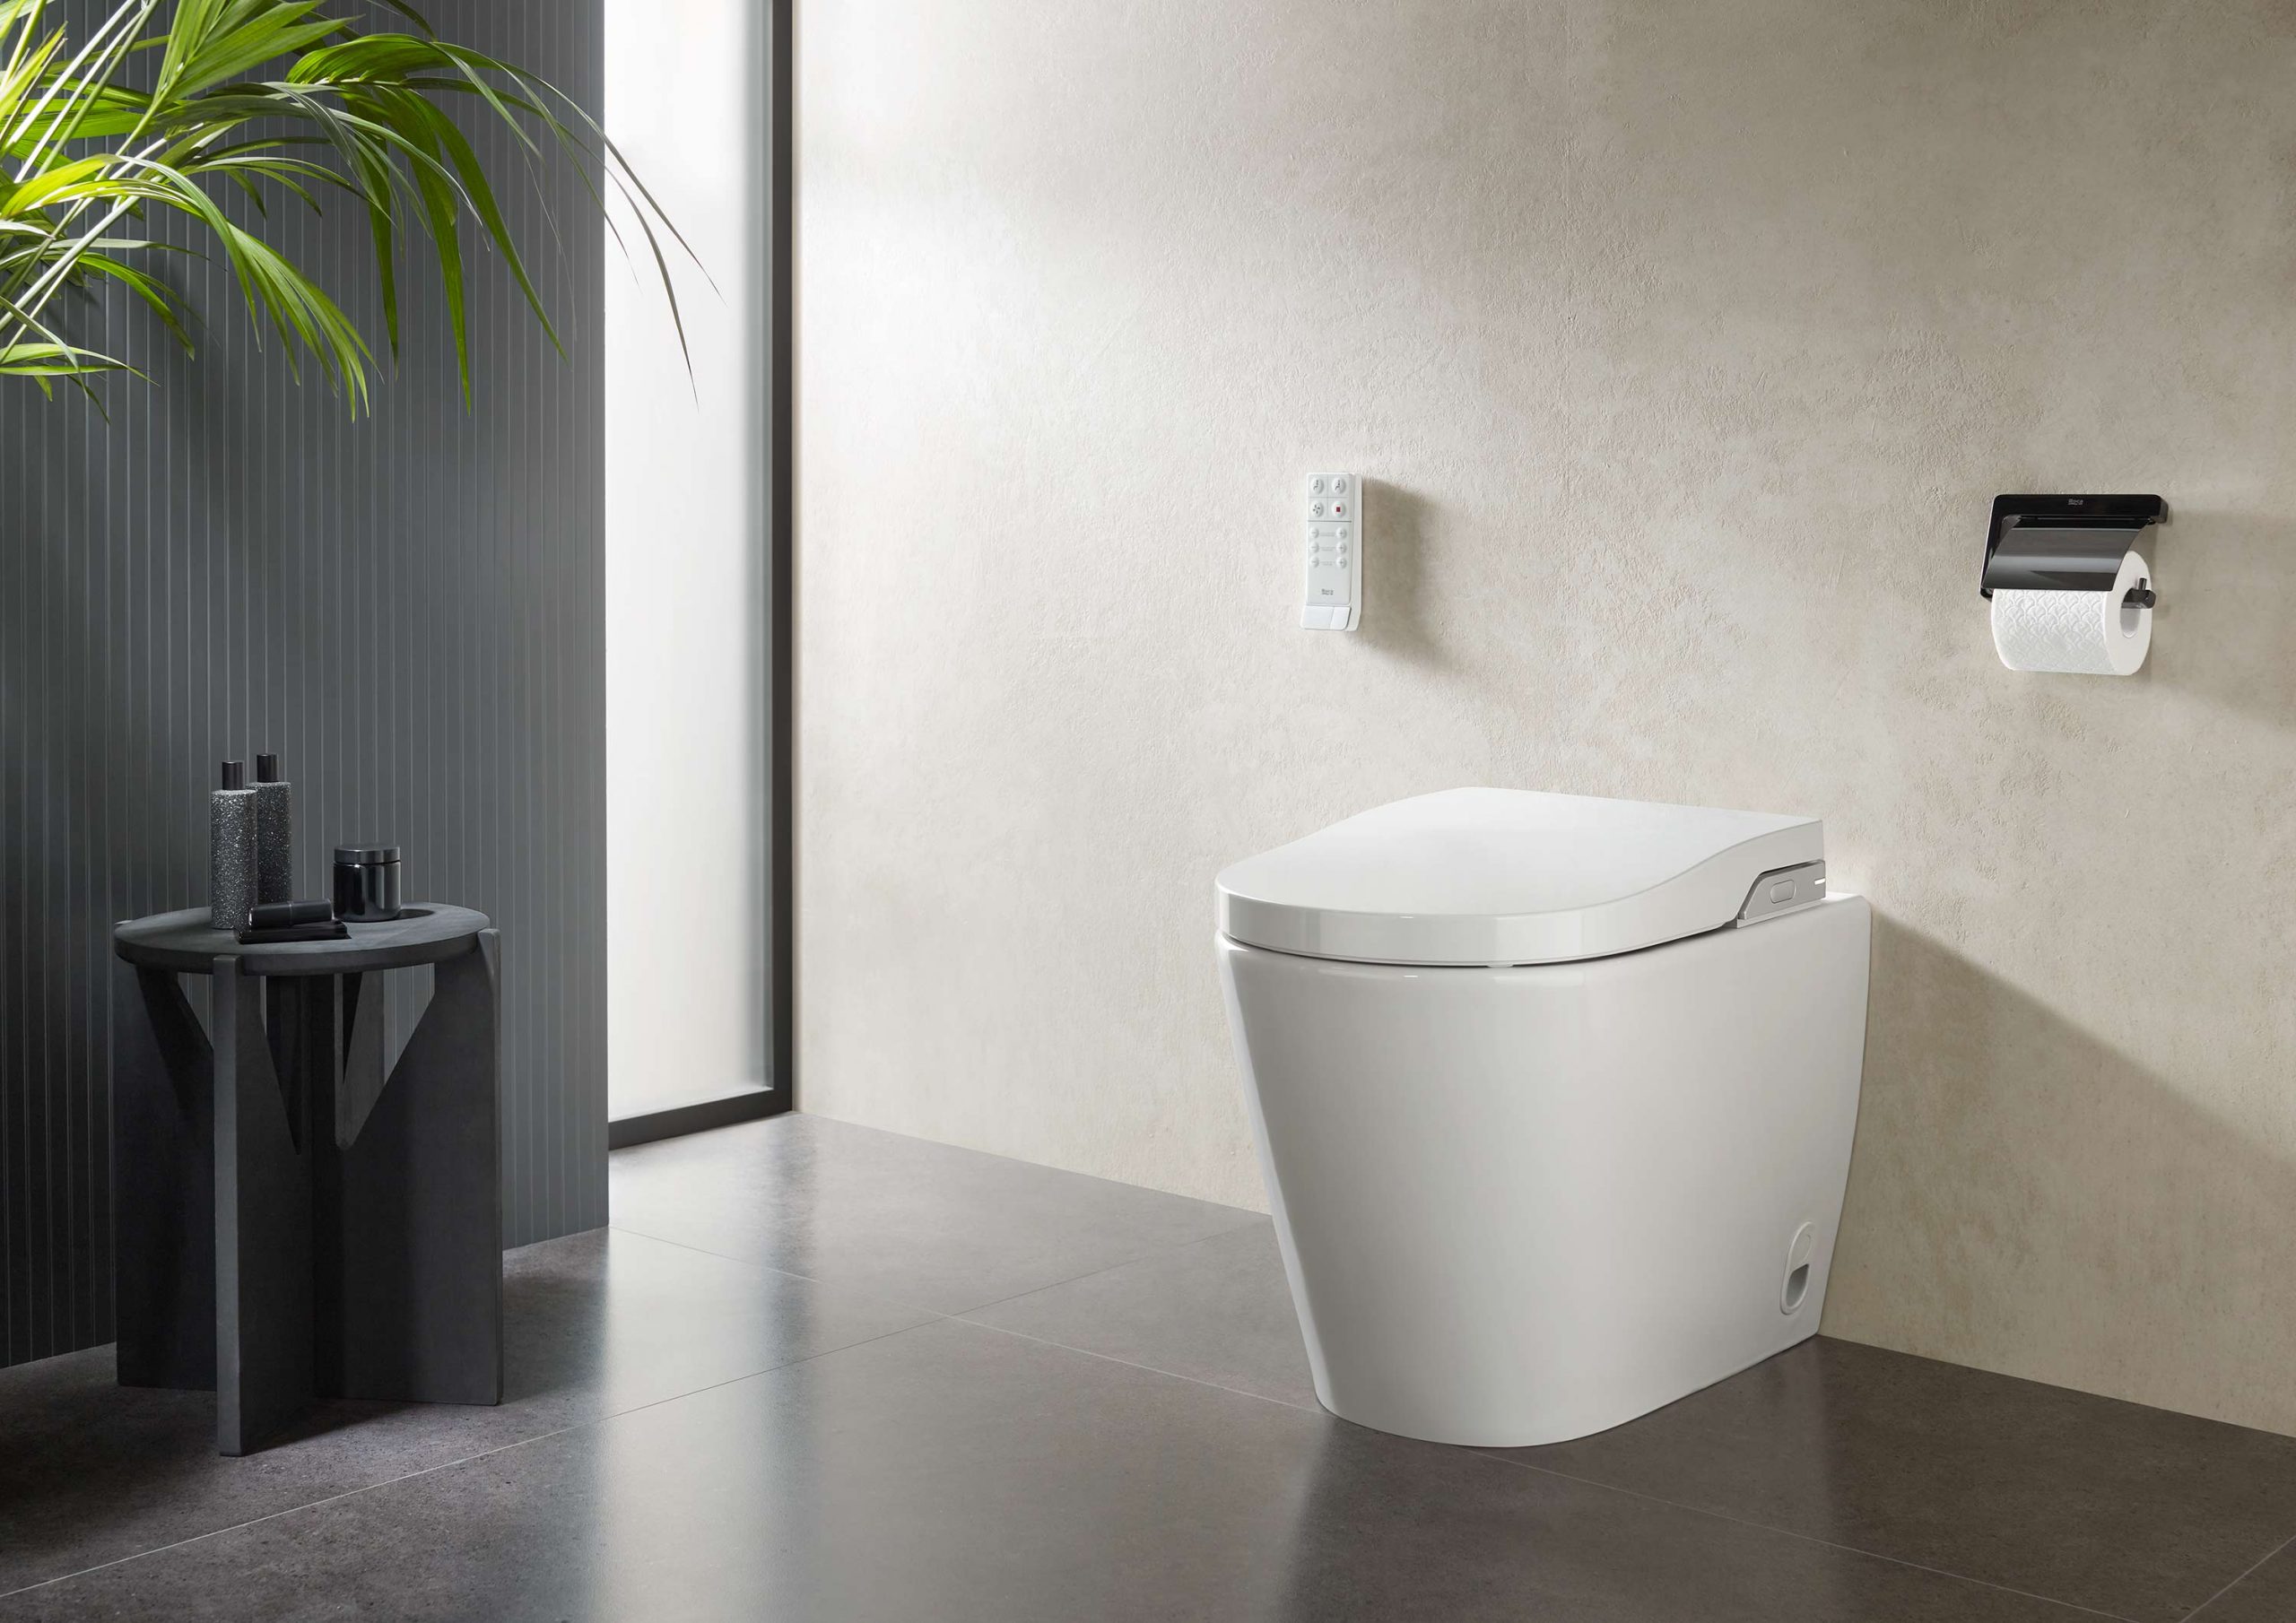 Salle de bains avec WC : les idées pour ranger son papier toilette